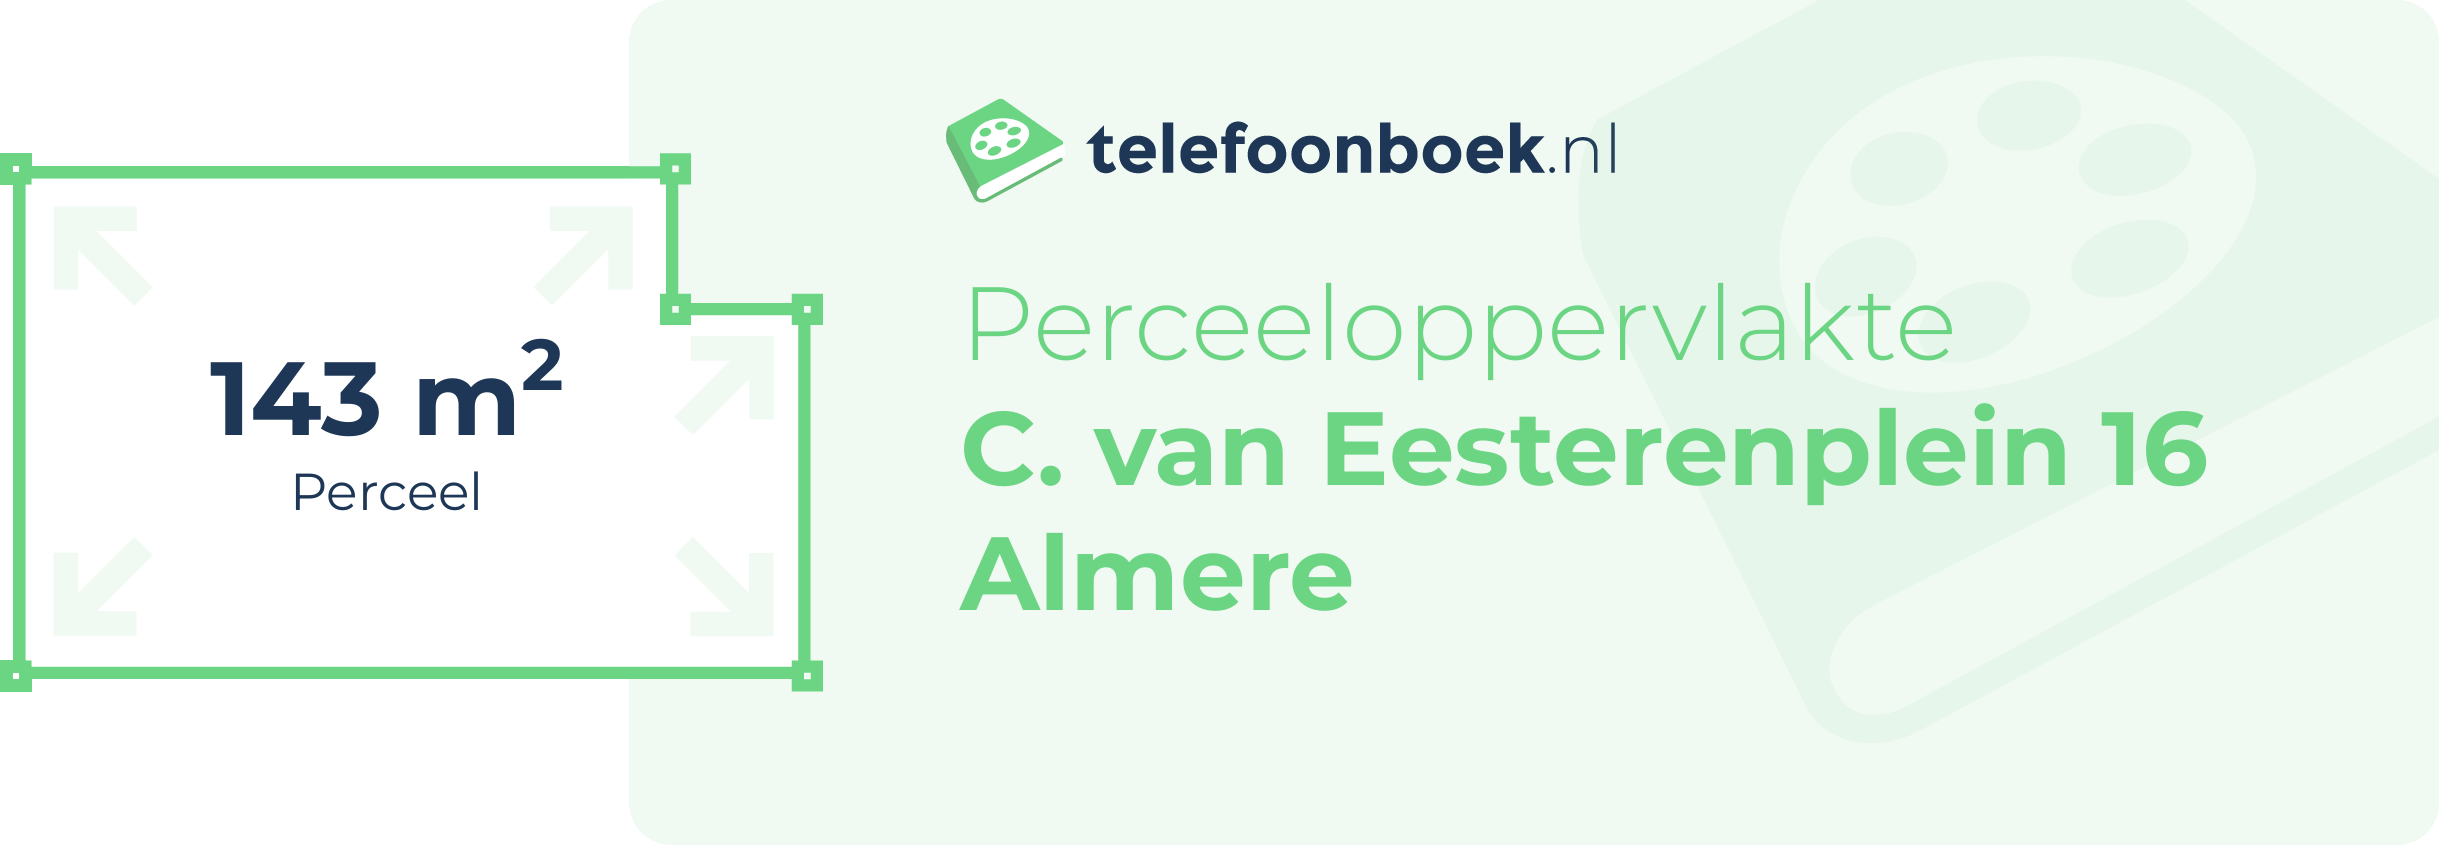 Perceeloppervlakte C. Van Eesterenplein 16 Almere